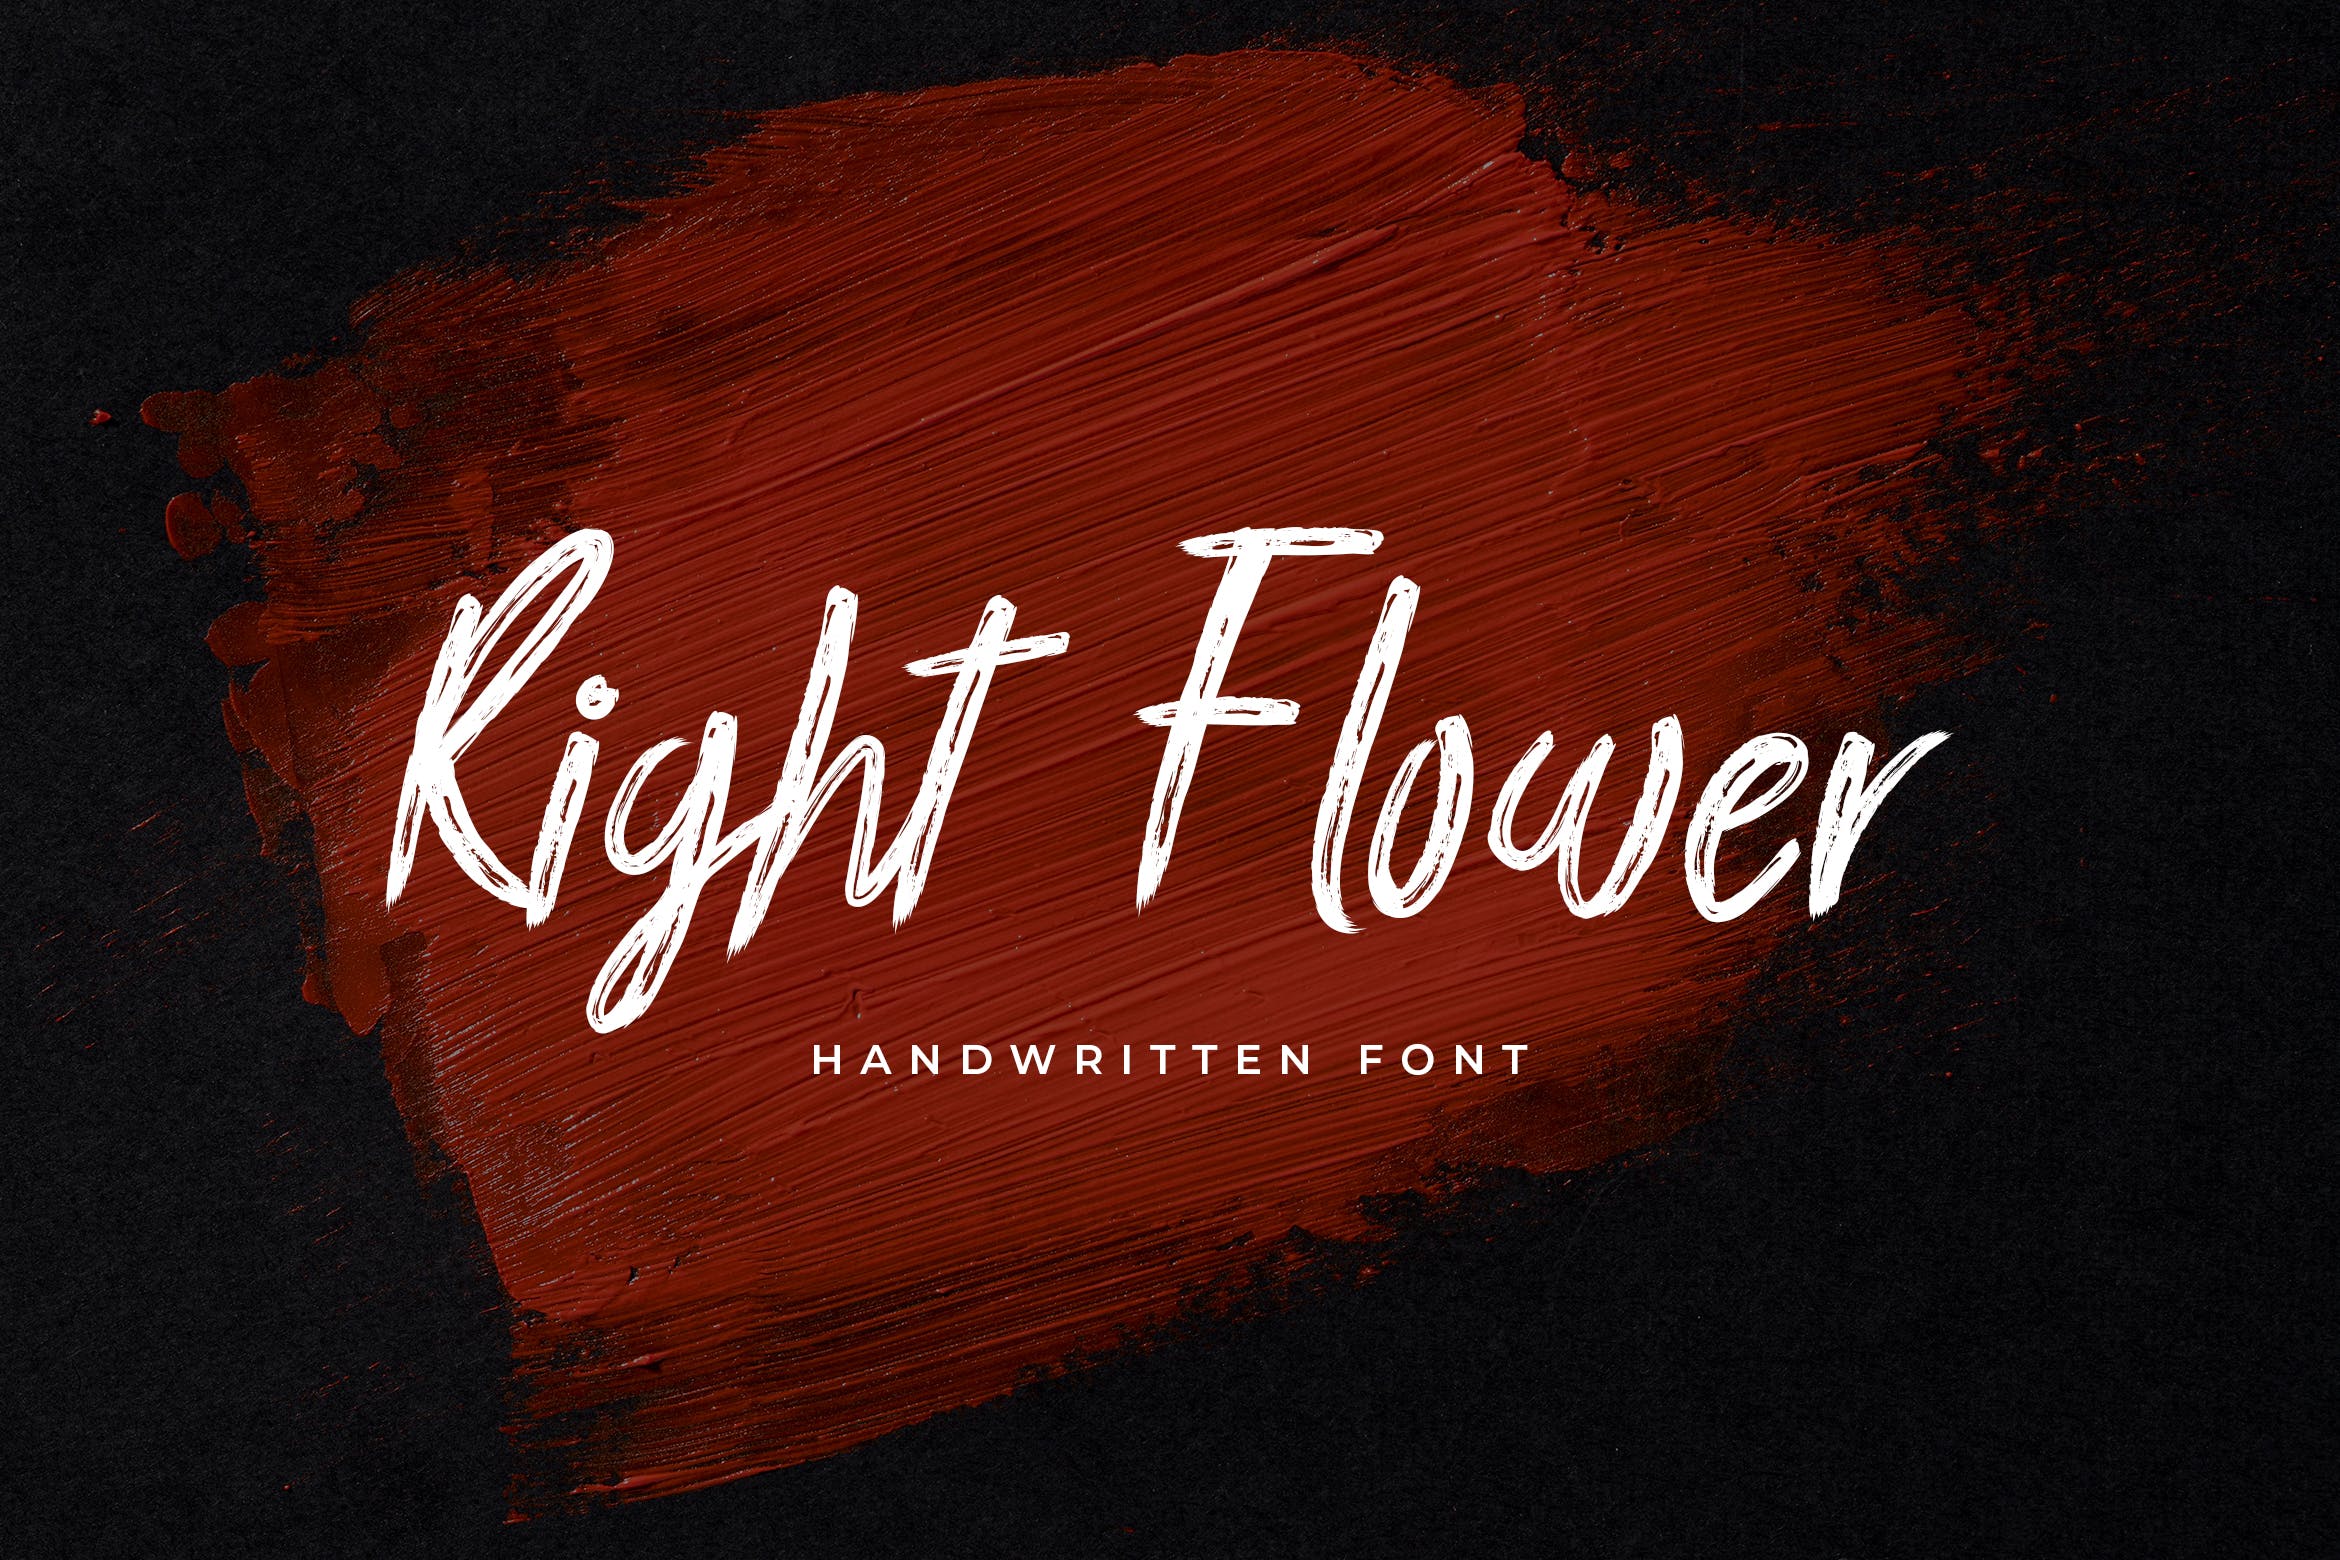 英文手写笔刷风格字体 Right Flower Brush Handwritten Font 设计素材 第1张